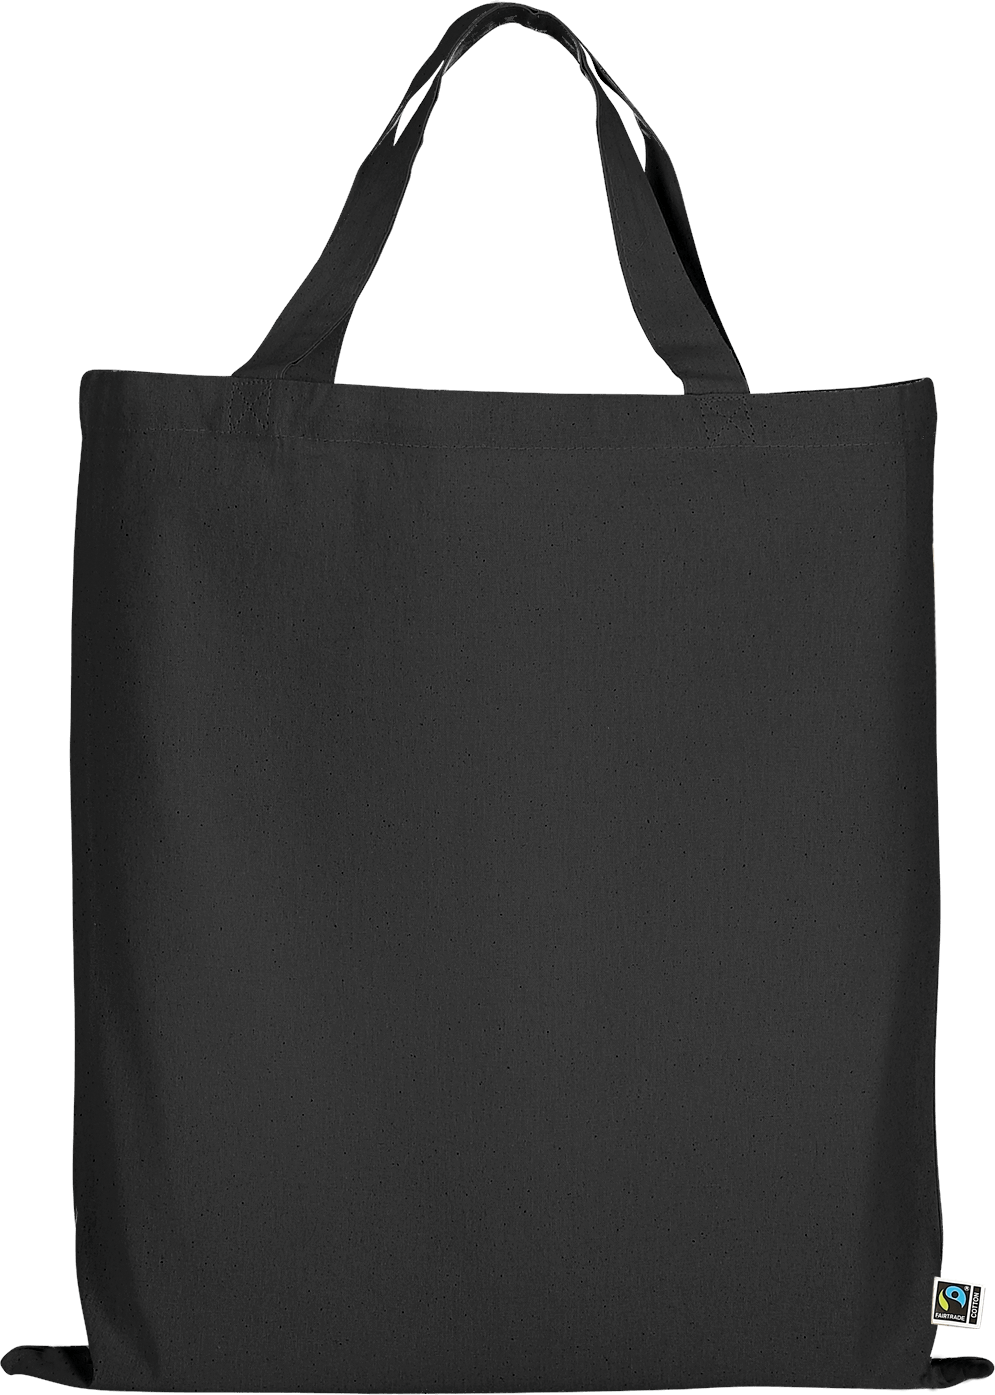 TEXXILLA Tasche aus Fairtrade-zertifizierter Baumwolle mit zwei kurzen Henkeln, schwarz